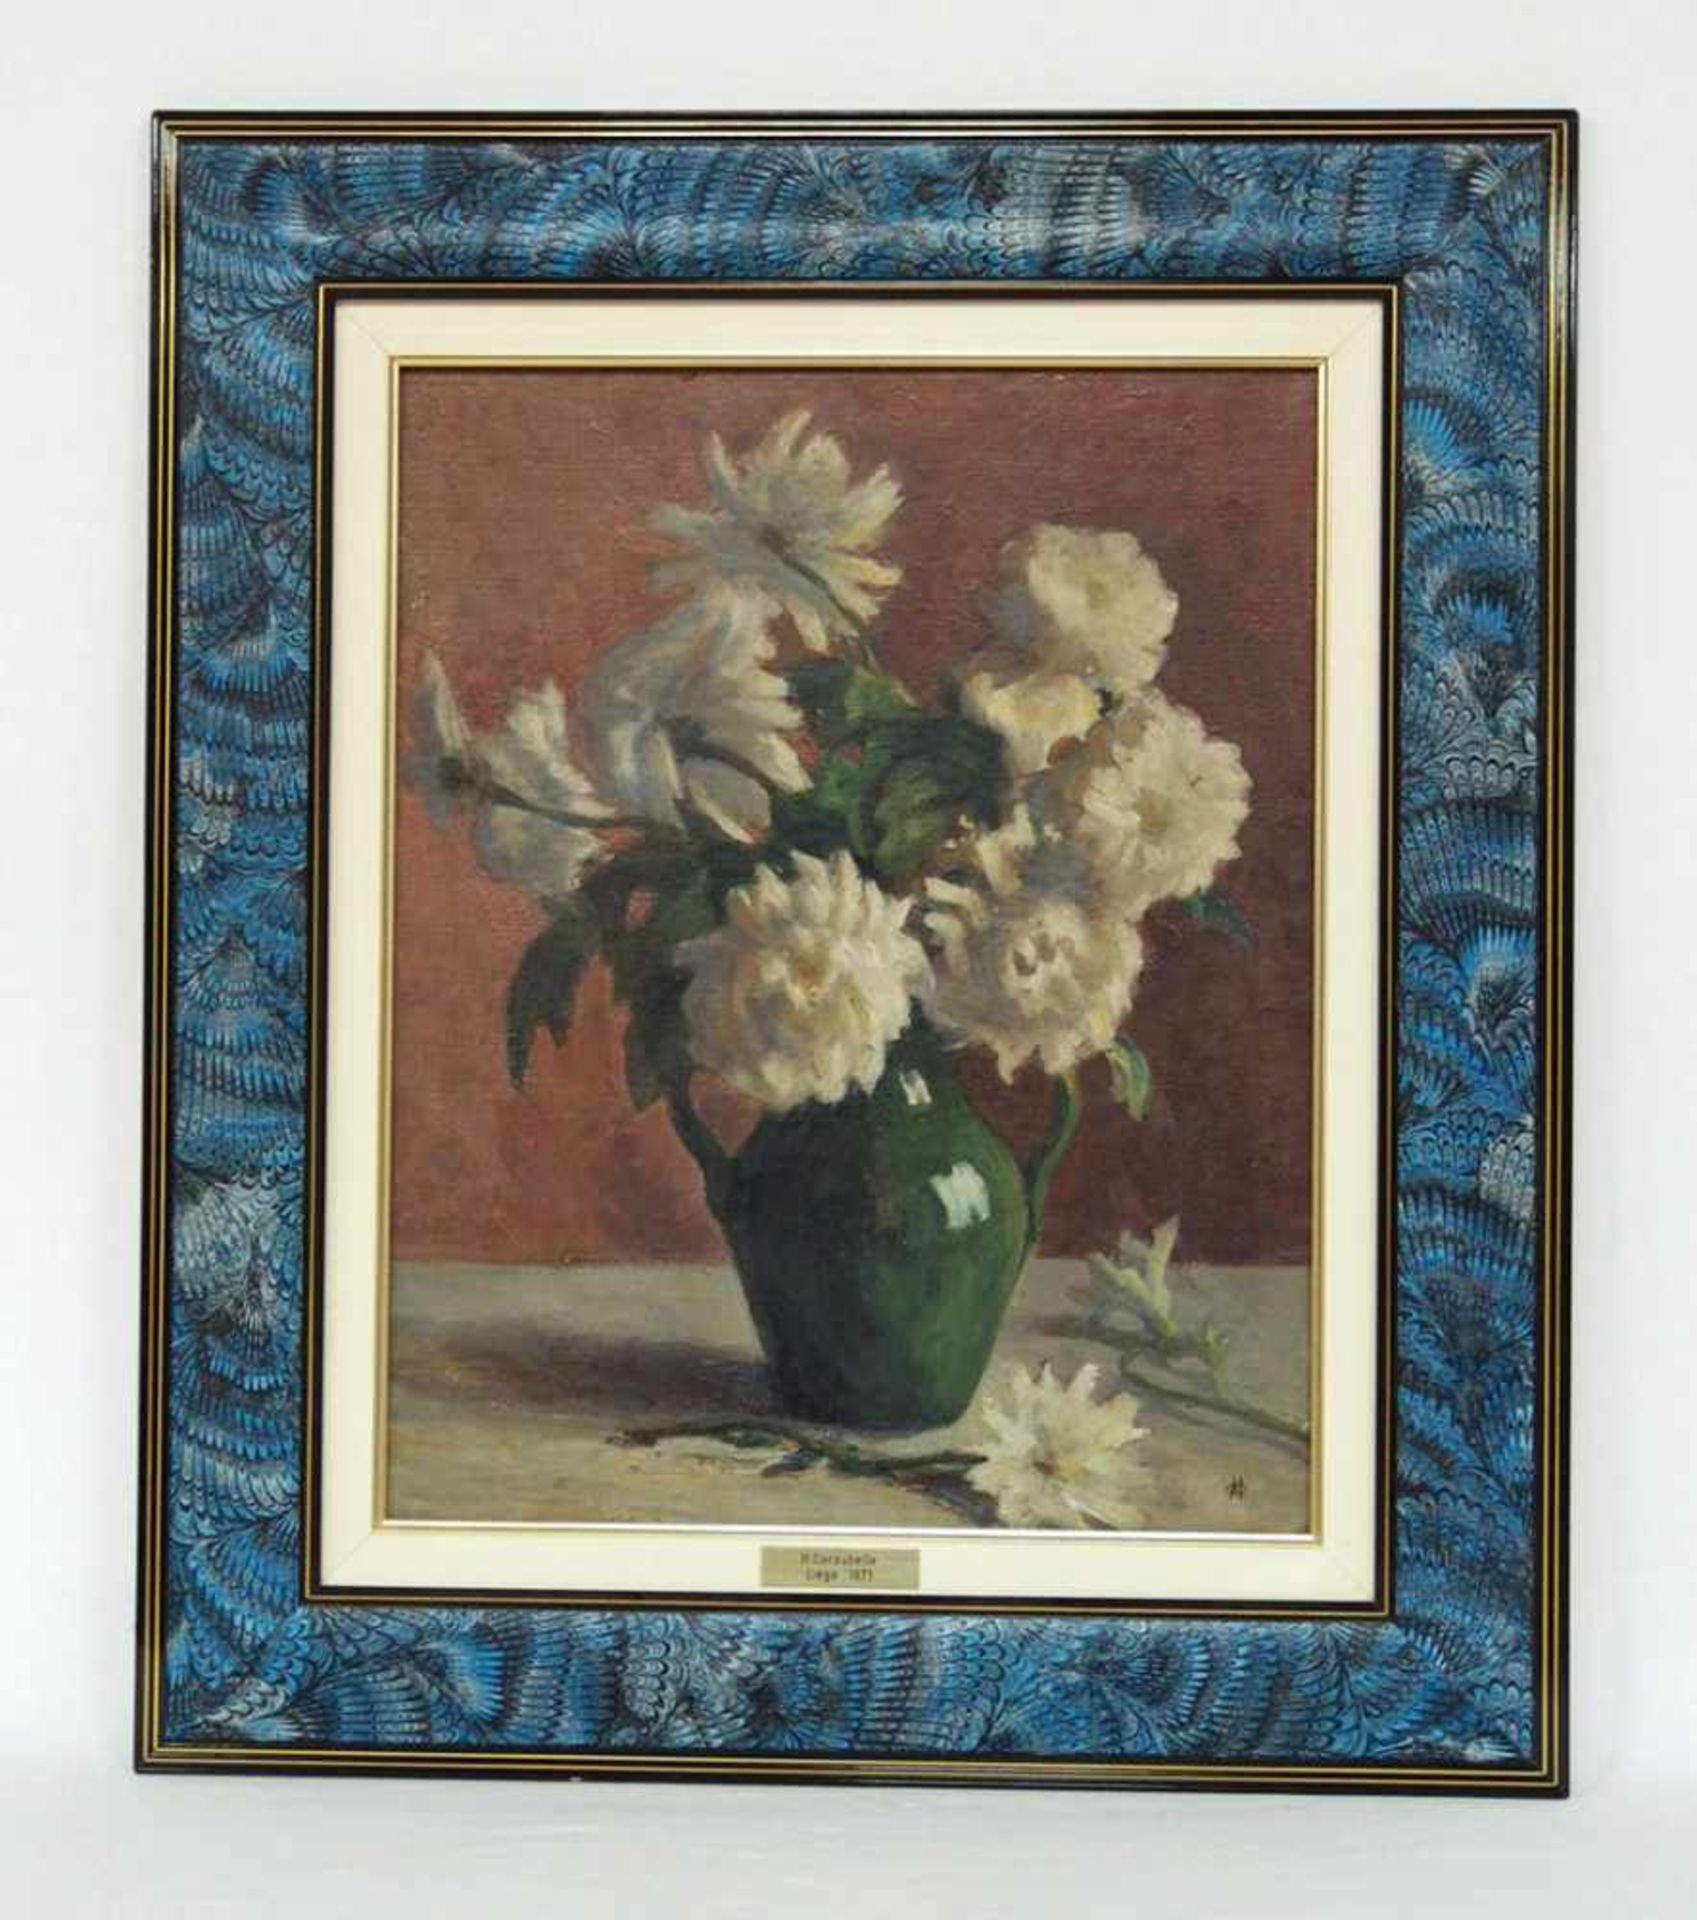 COROUBELLE, Hypolite1871-?BlumenstillebenÖl auf Leinwand, monogrammiert unten rechts, 44 x 35 cm, - Bild 2 aus 2